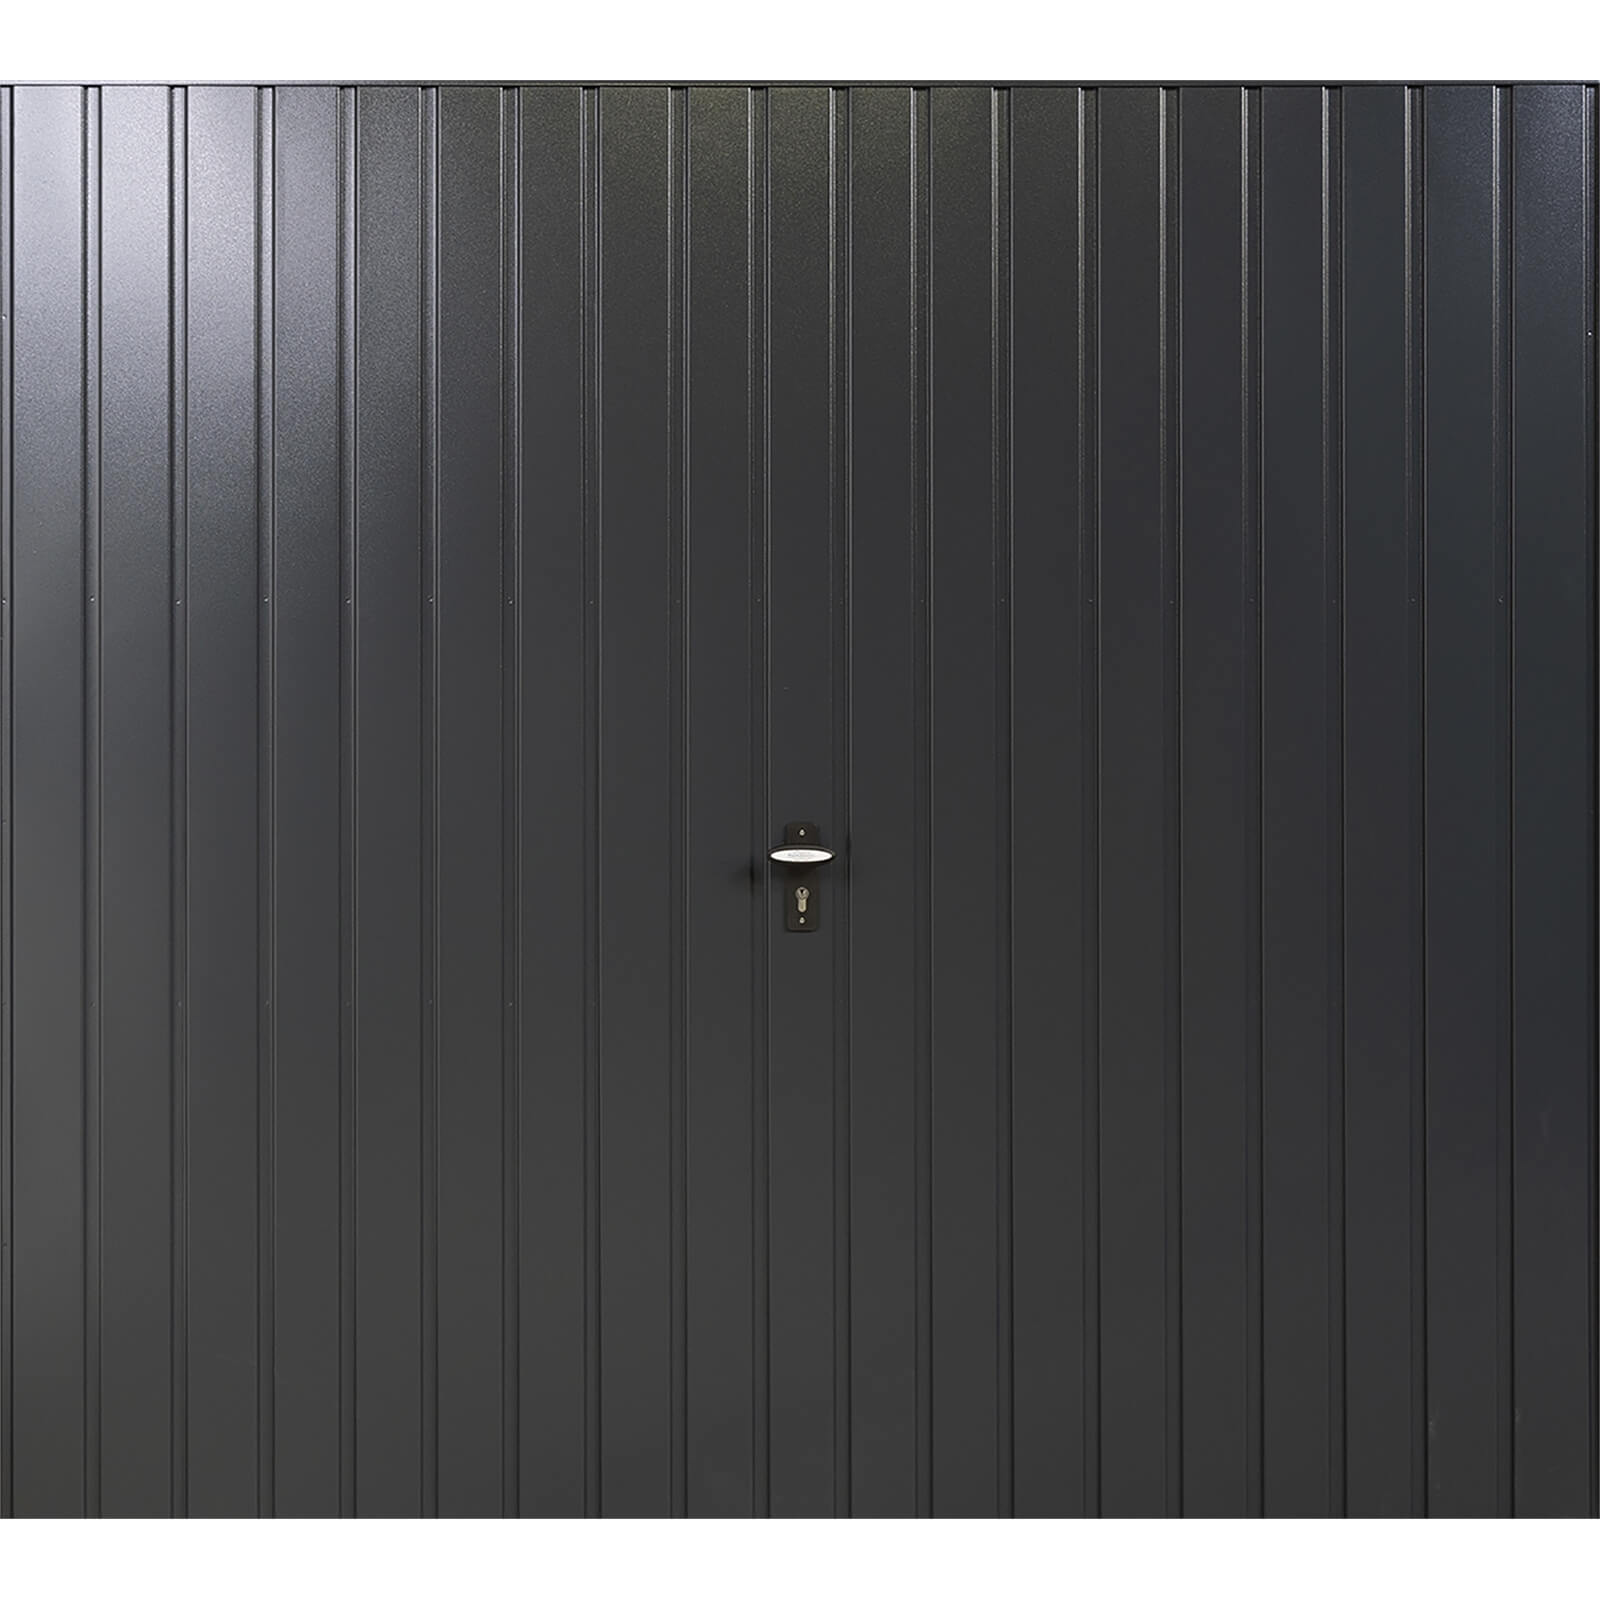 Vertical 7' x 6' 6 Framed Steel Garage Door Anthracite Grey